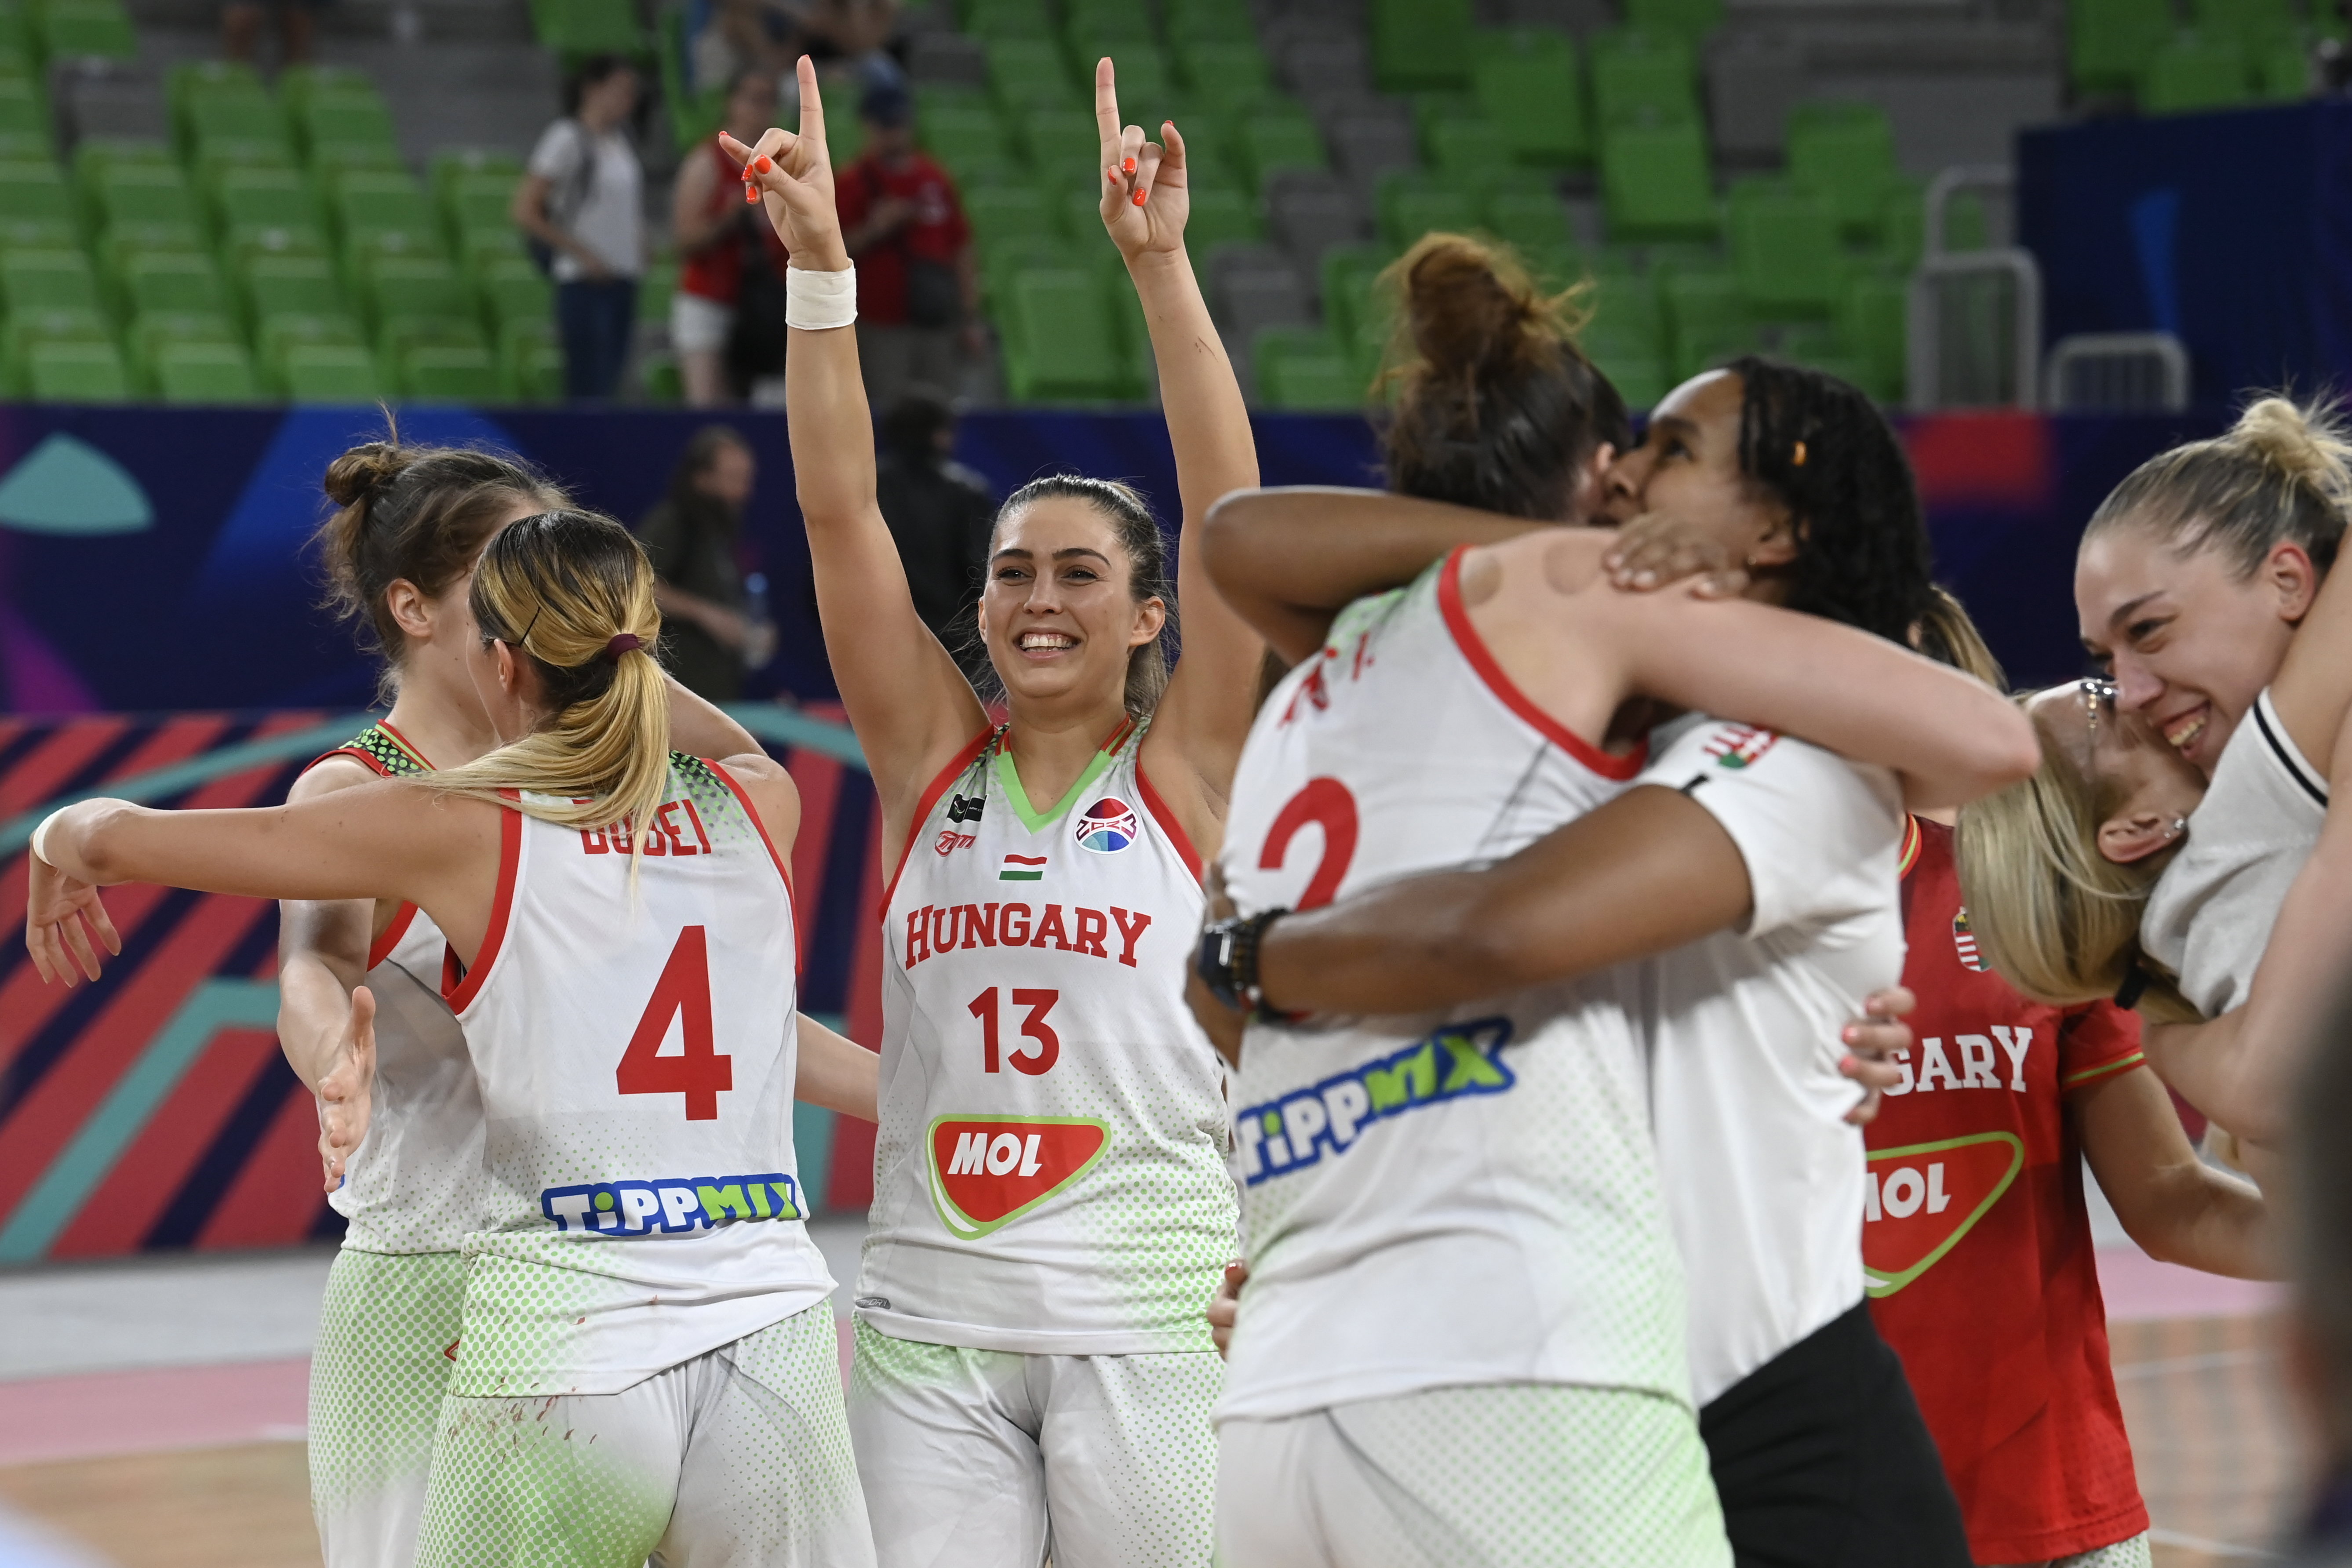 Kosárlabda: a címvédő legyőzésével csoportelsőként negyeddöntőben a magyar női válogatott az Eb-n